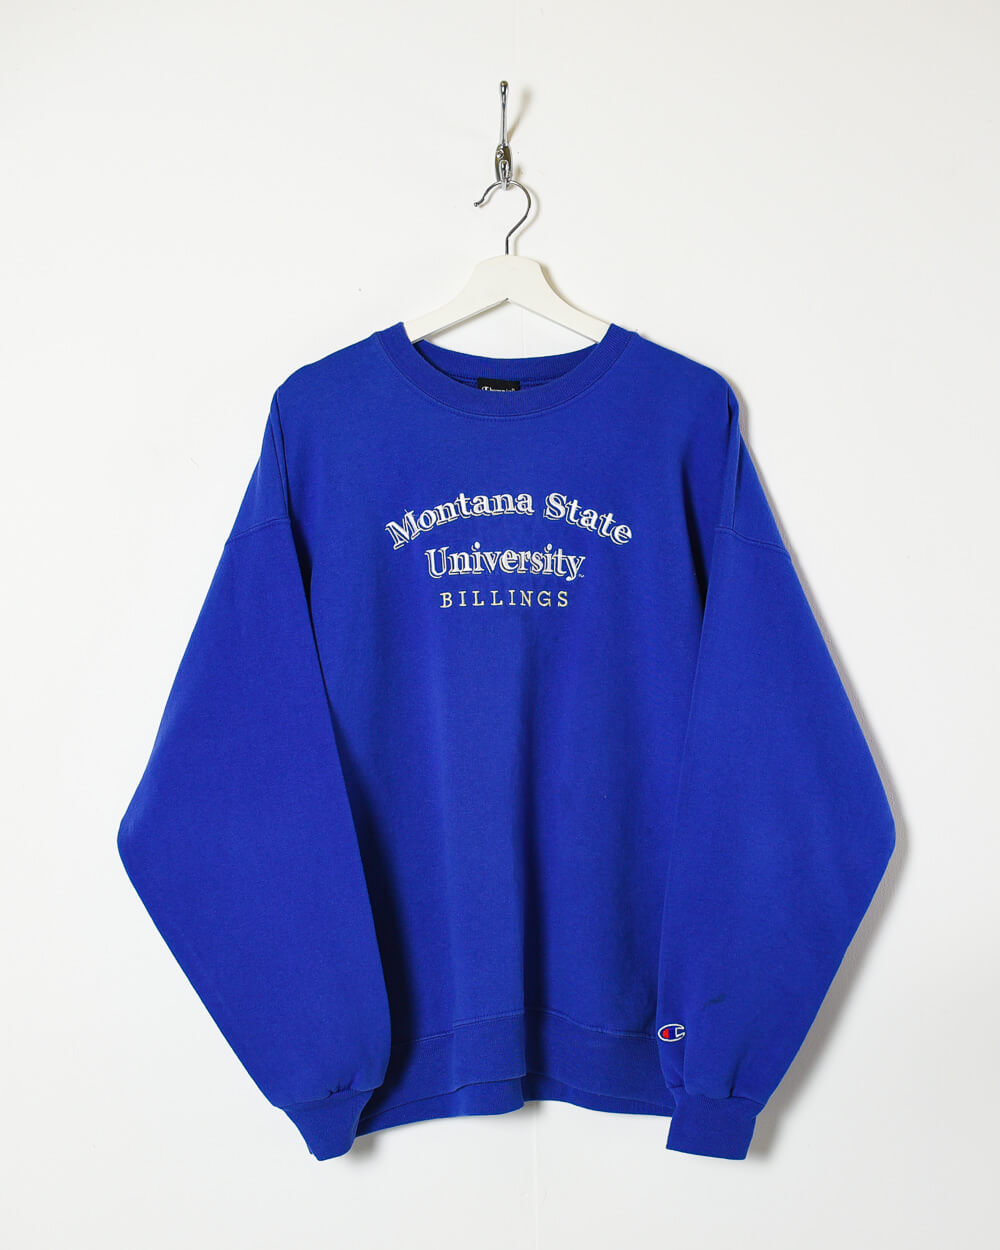 Blue Champion Montana State University Billings Sweatshirt - Large